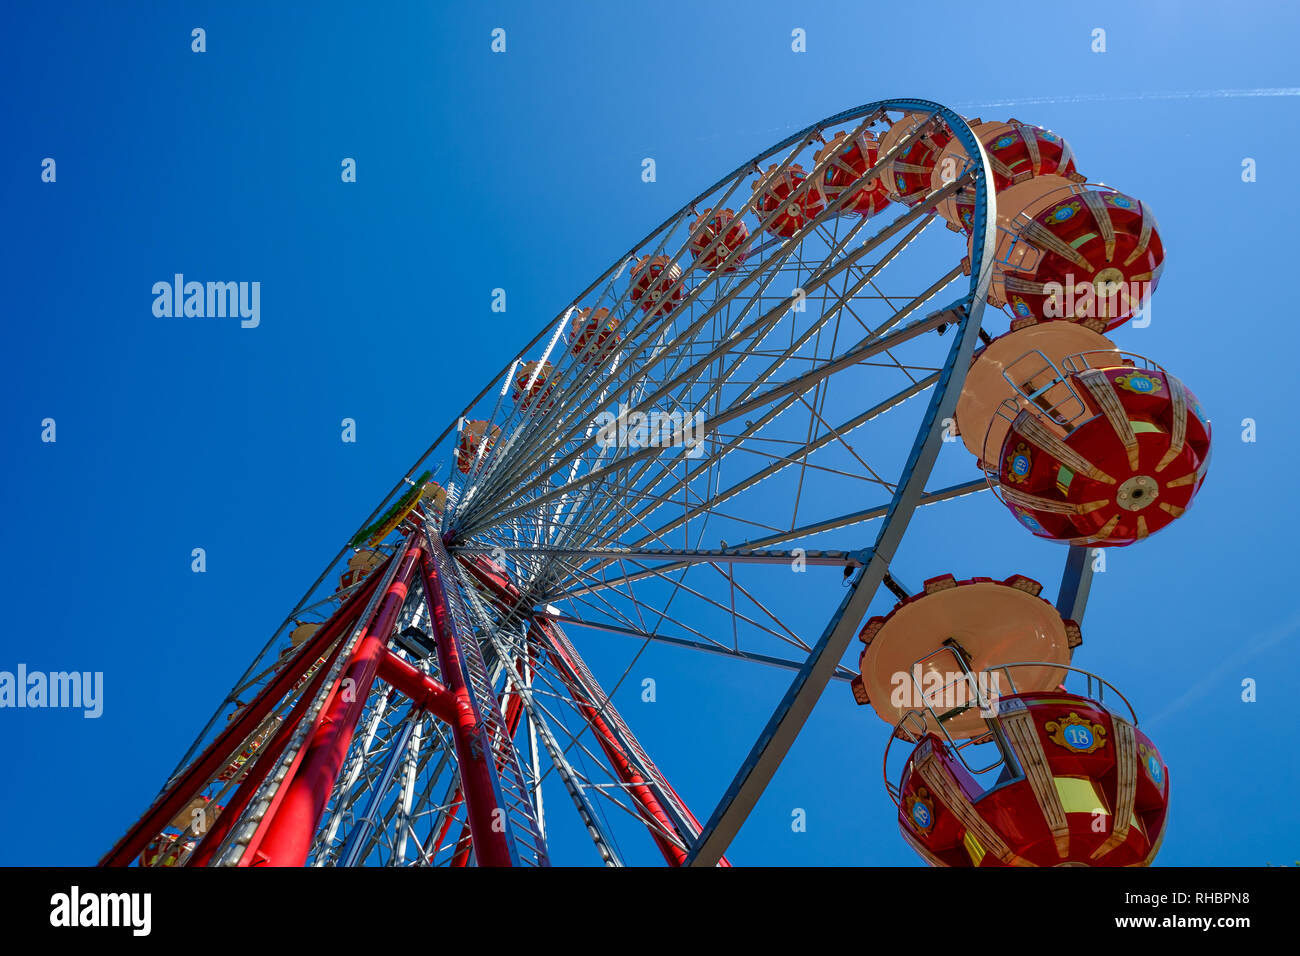 Ferris wheel in the Zurich Stock Photo